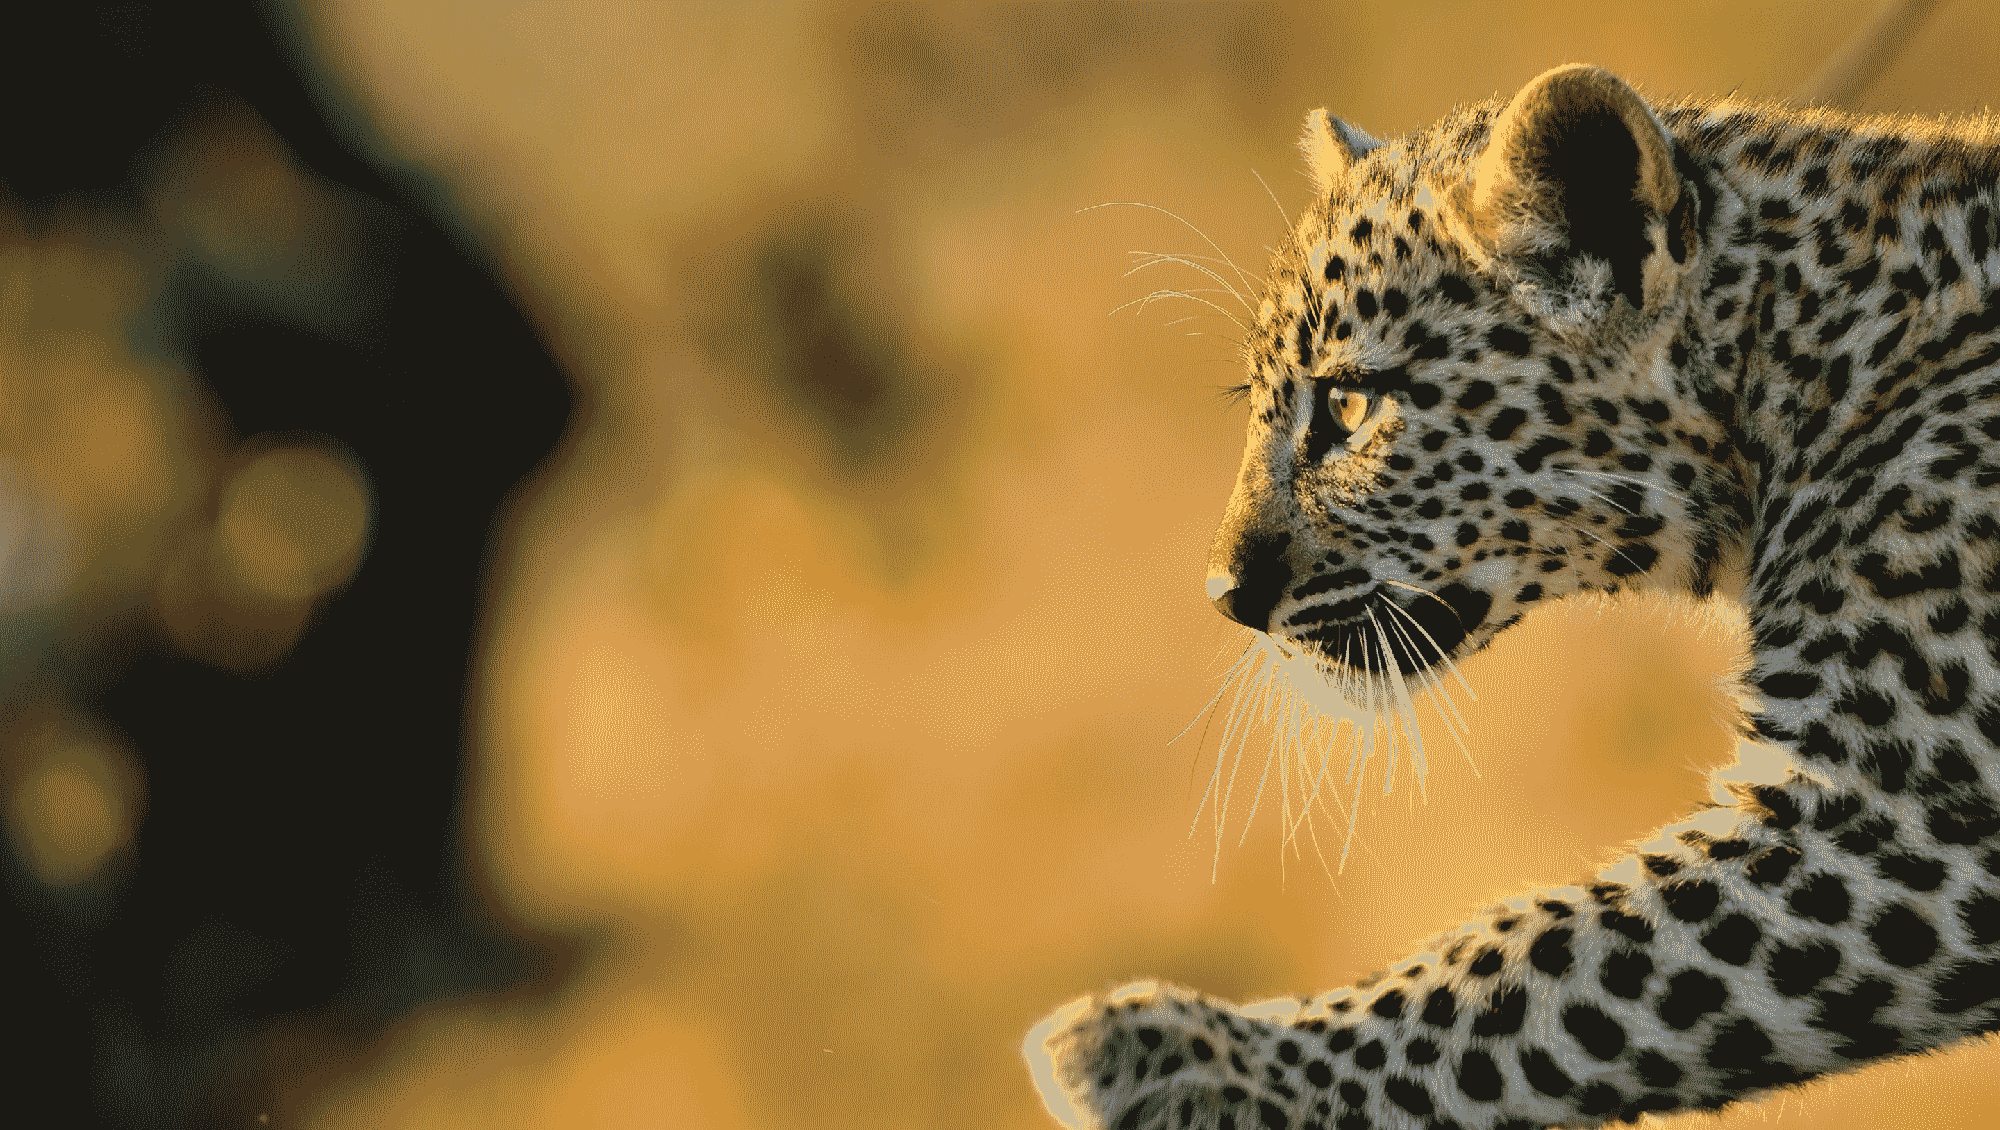 Okonjima - Leopard - African Luxury